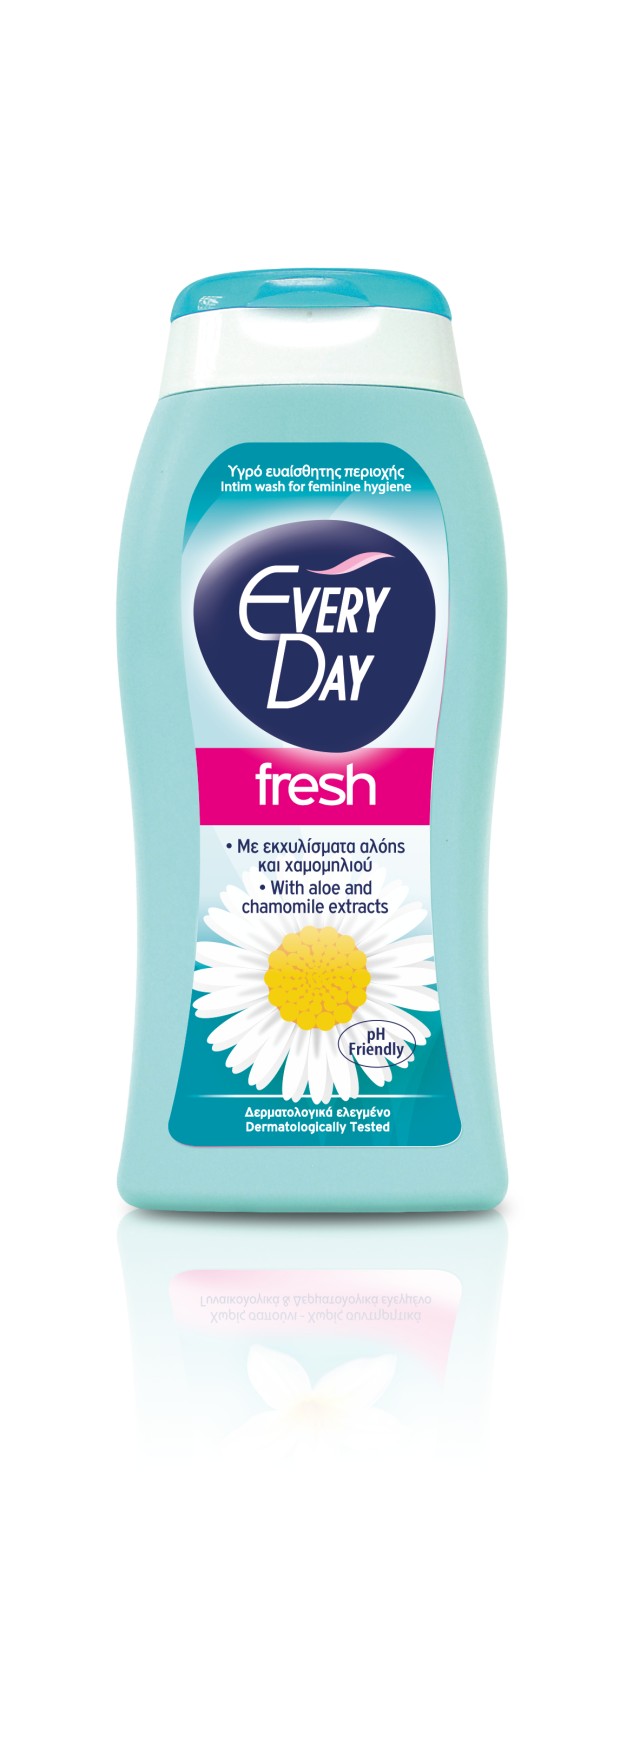 Every Day Fresh υγρό καθαρισμού για την ευαίσθητη περιοχή 200ml